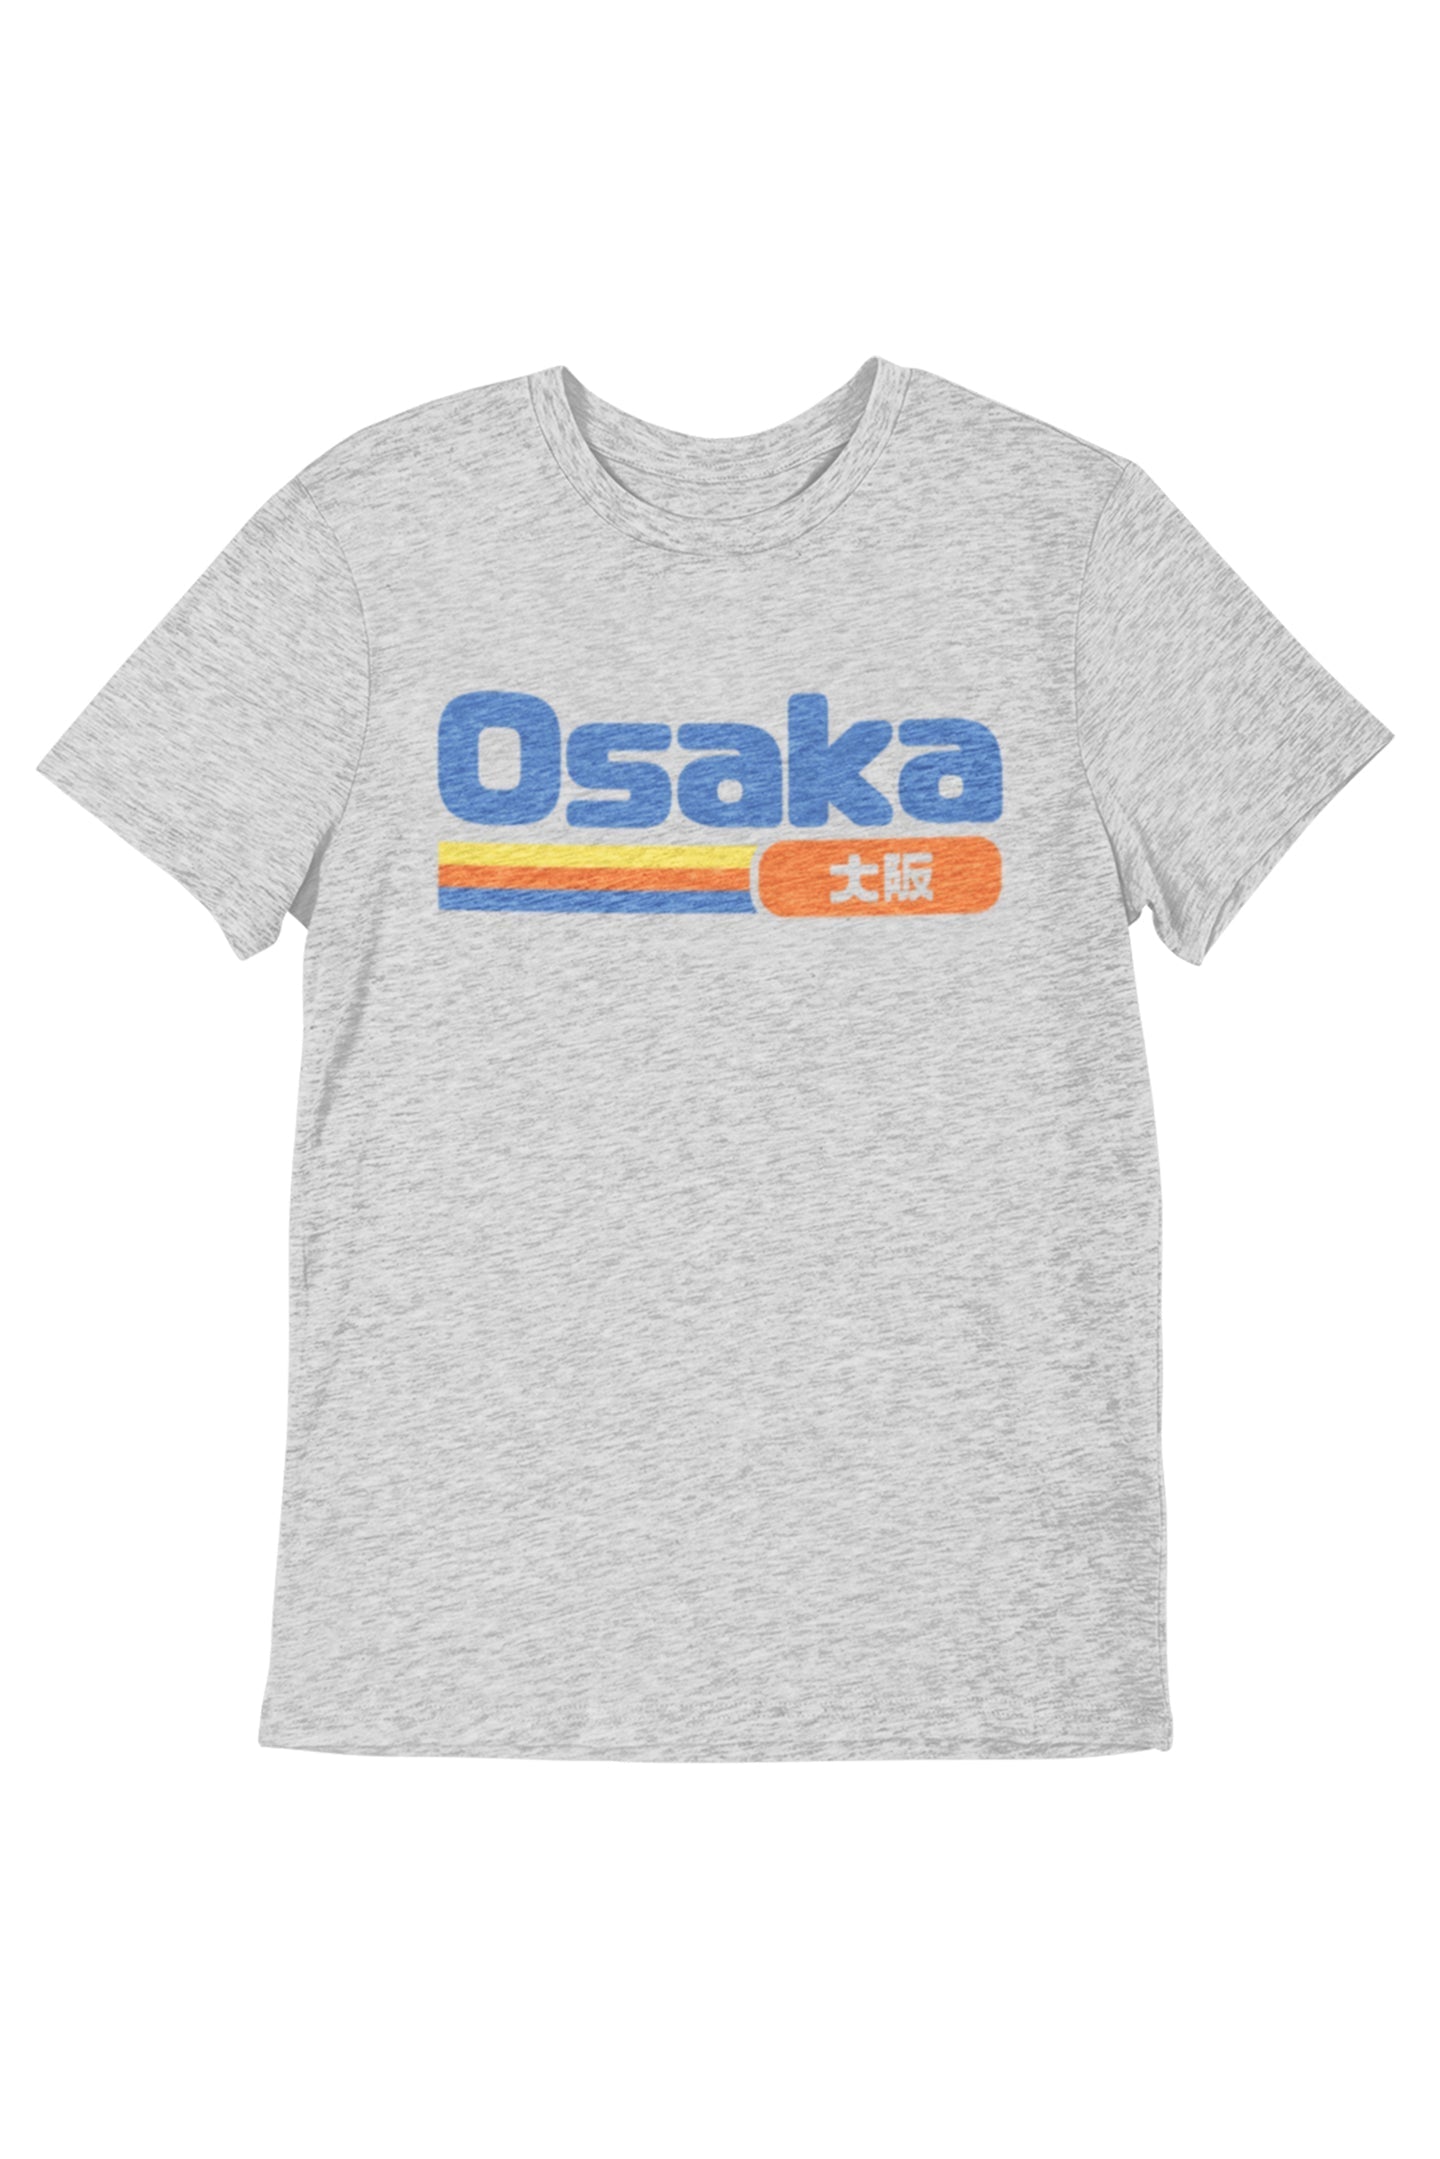 Osaka - Women's